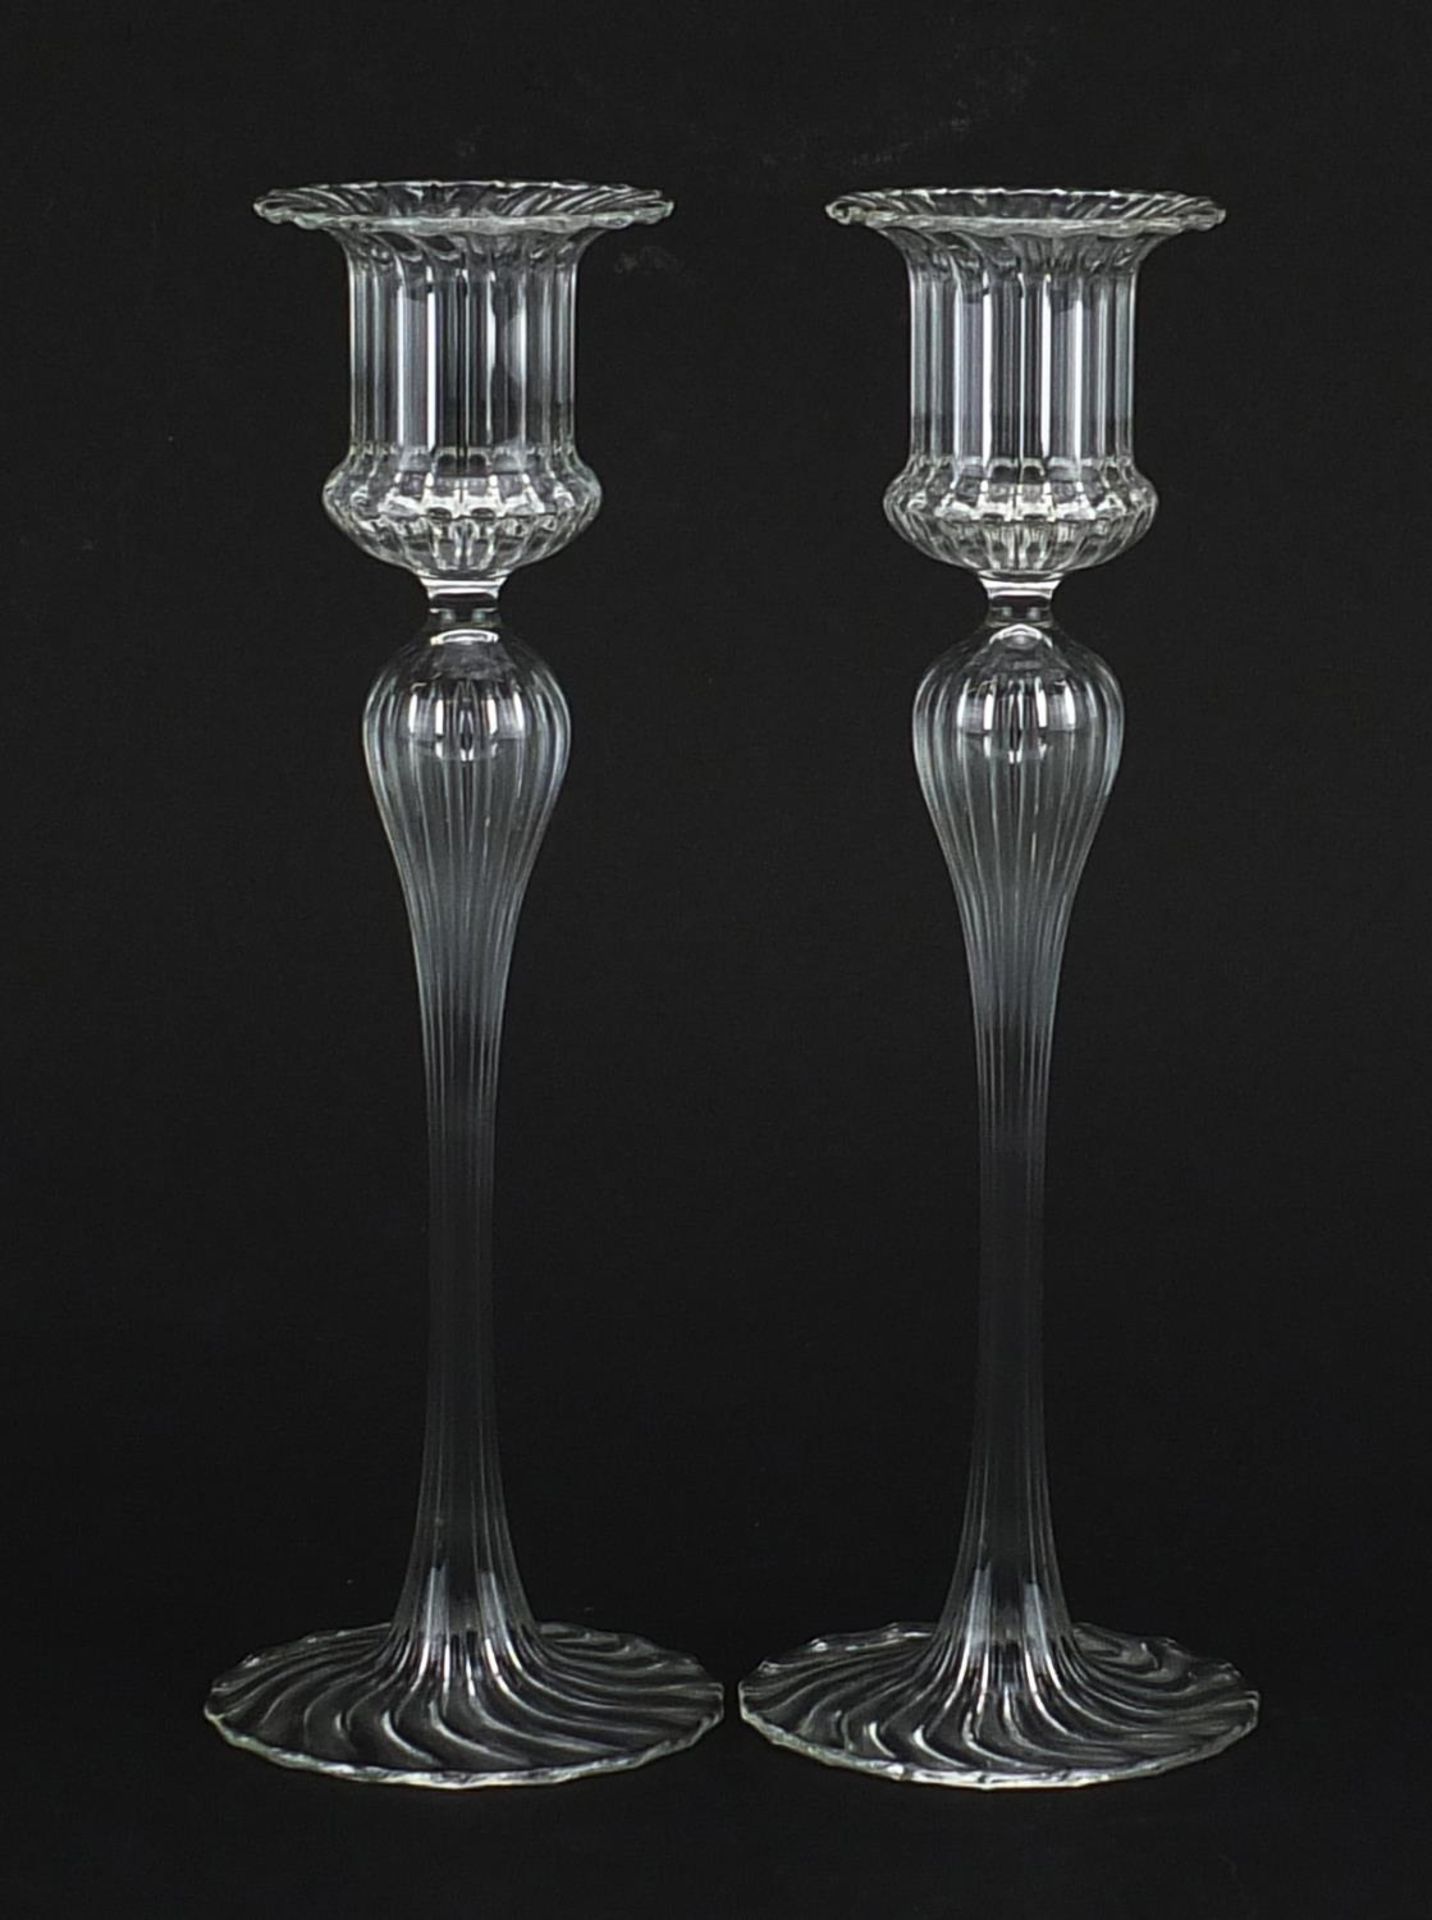 Pair of Venetian glass candlesticks, each 21cm high